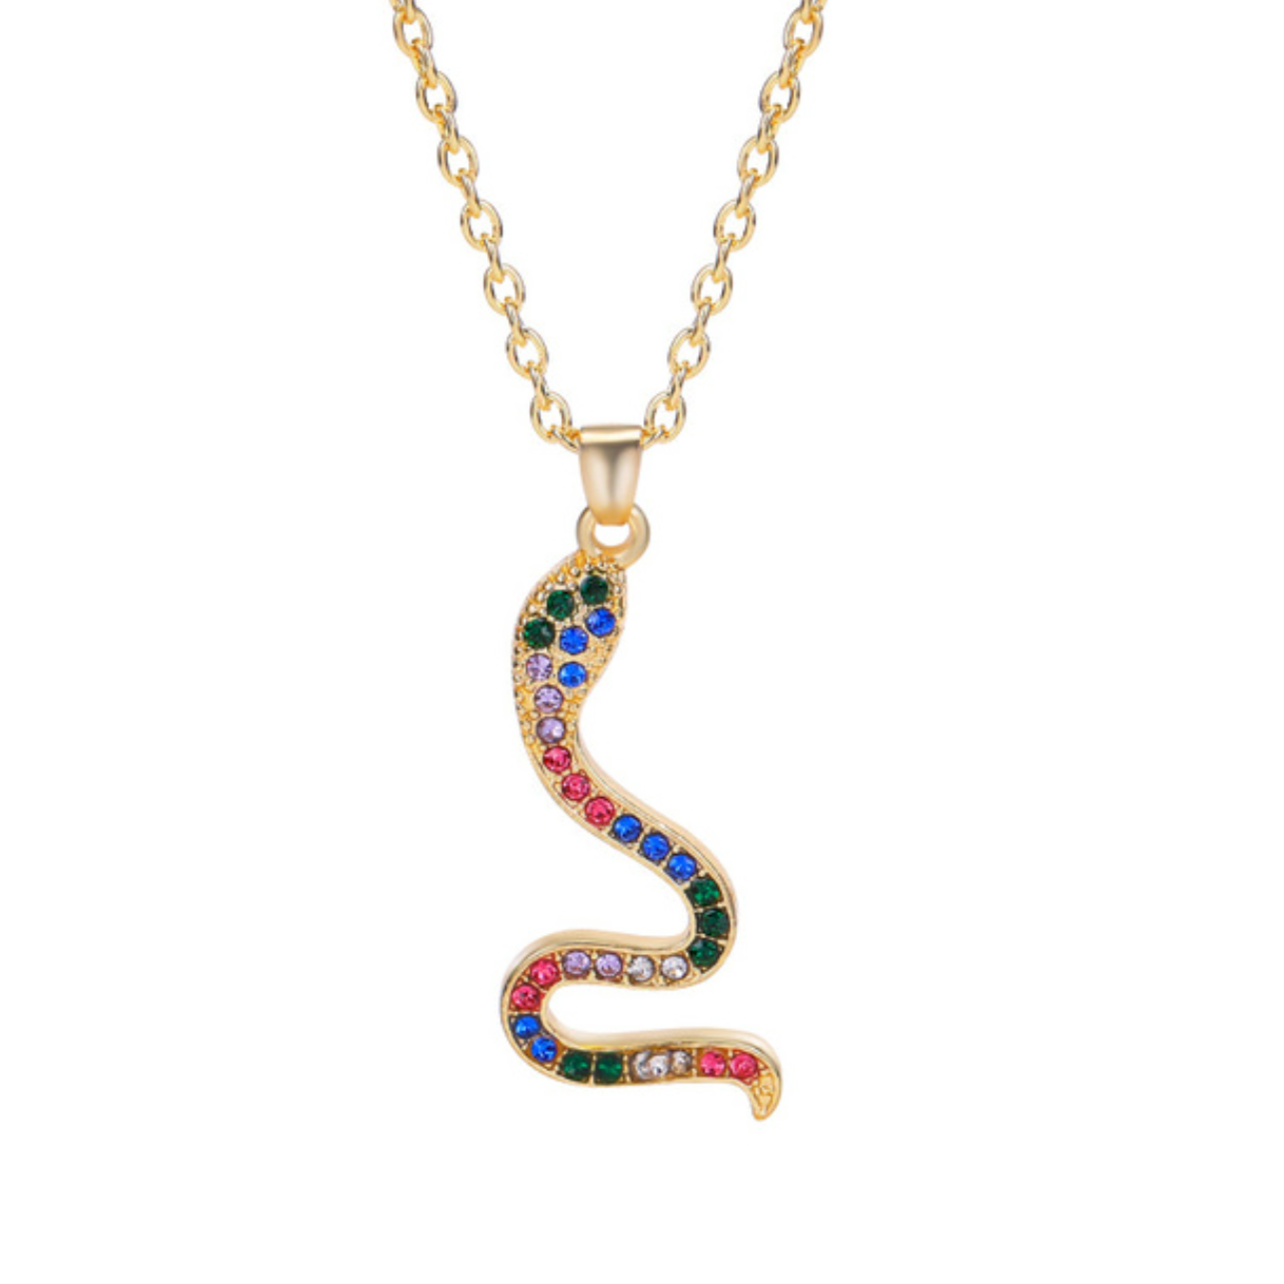 Collier or pendentif serpent doré serti de strass couleurs